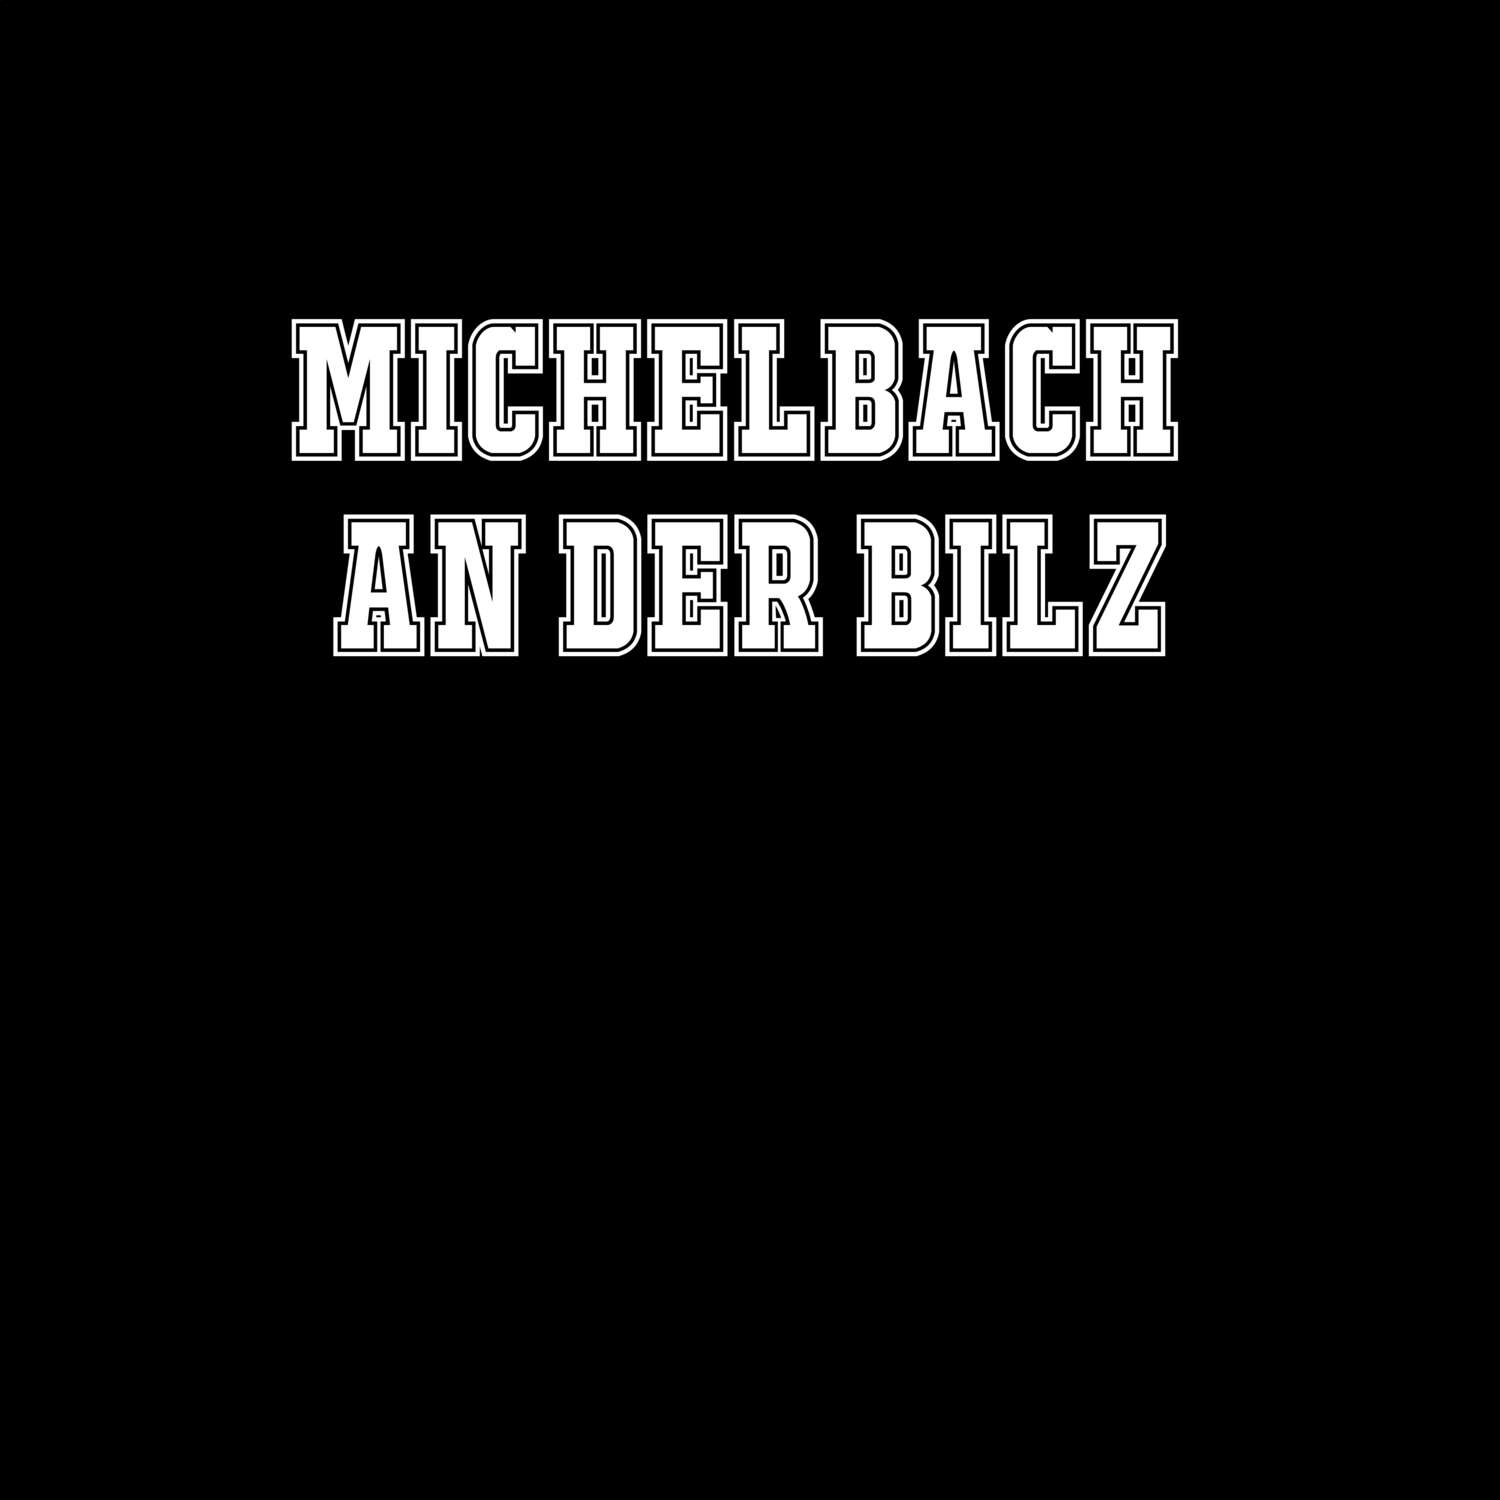 Michelbach an der Bilz T-Shirt »Classic«